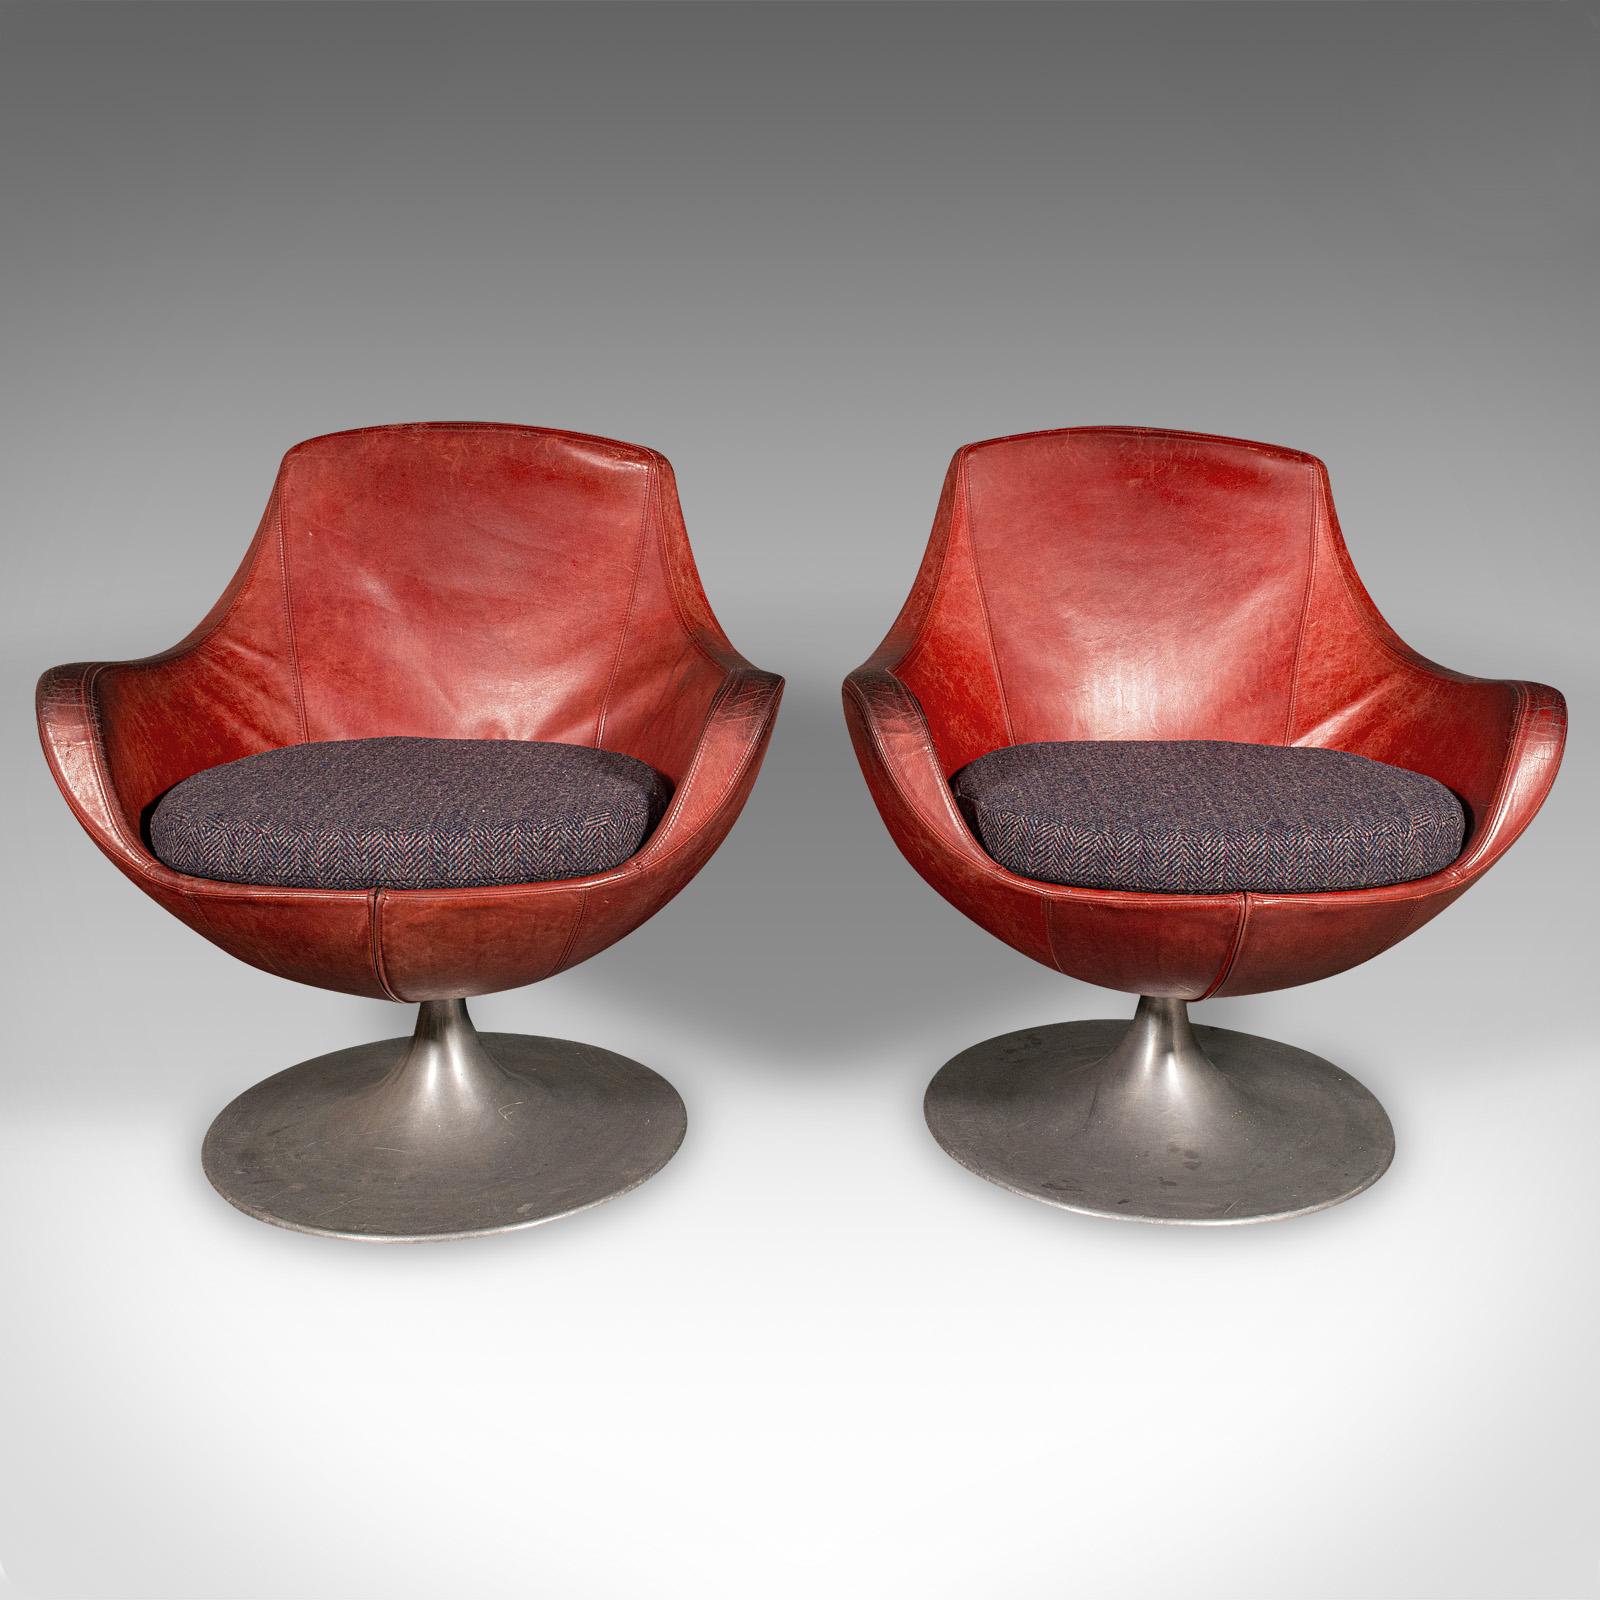 Dies ist ein Paar von Vintage-Drehwannenstühlen. Ein italienischer Loungesessel aus Leder mit gepolstertem Kissen, aus dem späten 20. Jahrhundert, um 1970.

Zwei einladende Wannenstühle, die Ihr Wohnzimmer oder Ihre Sitzecke bereichern
Mit